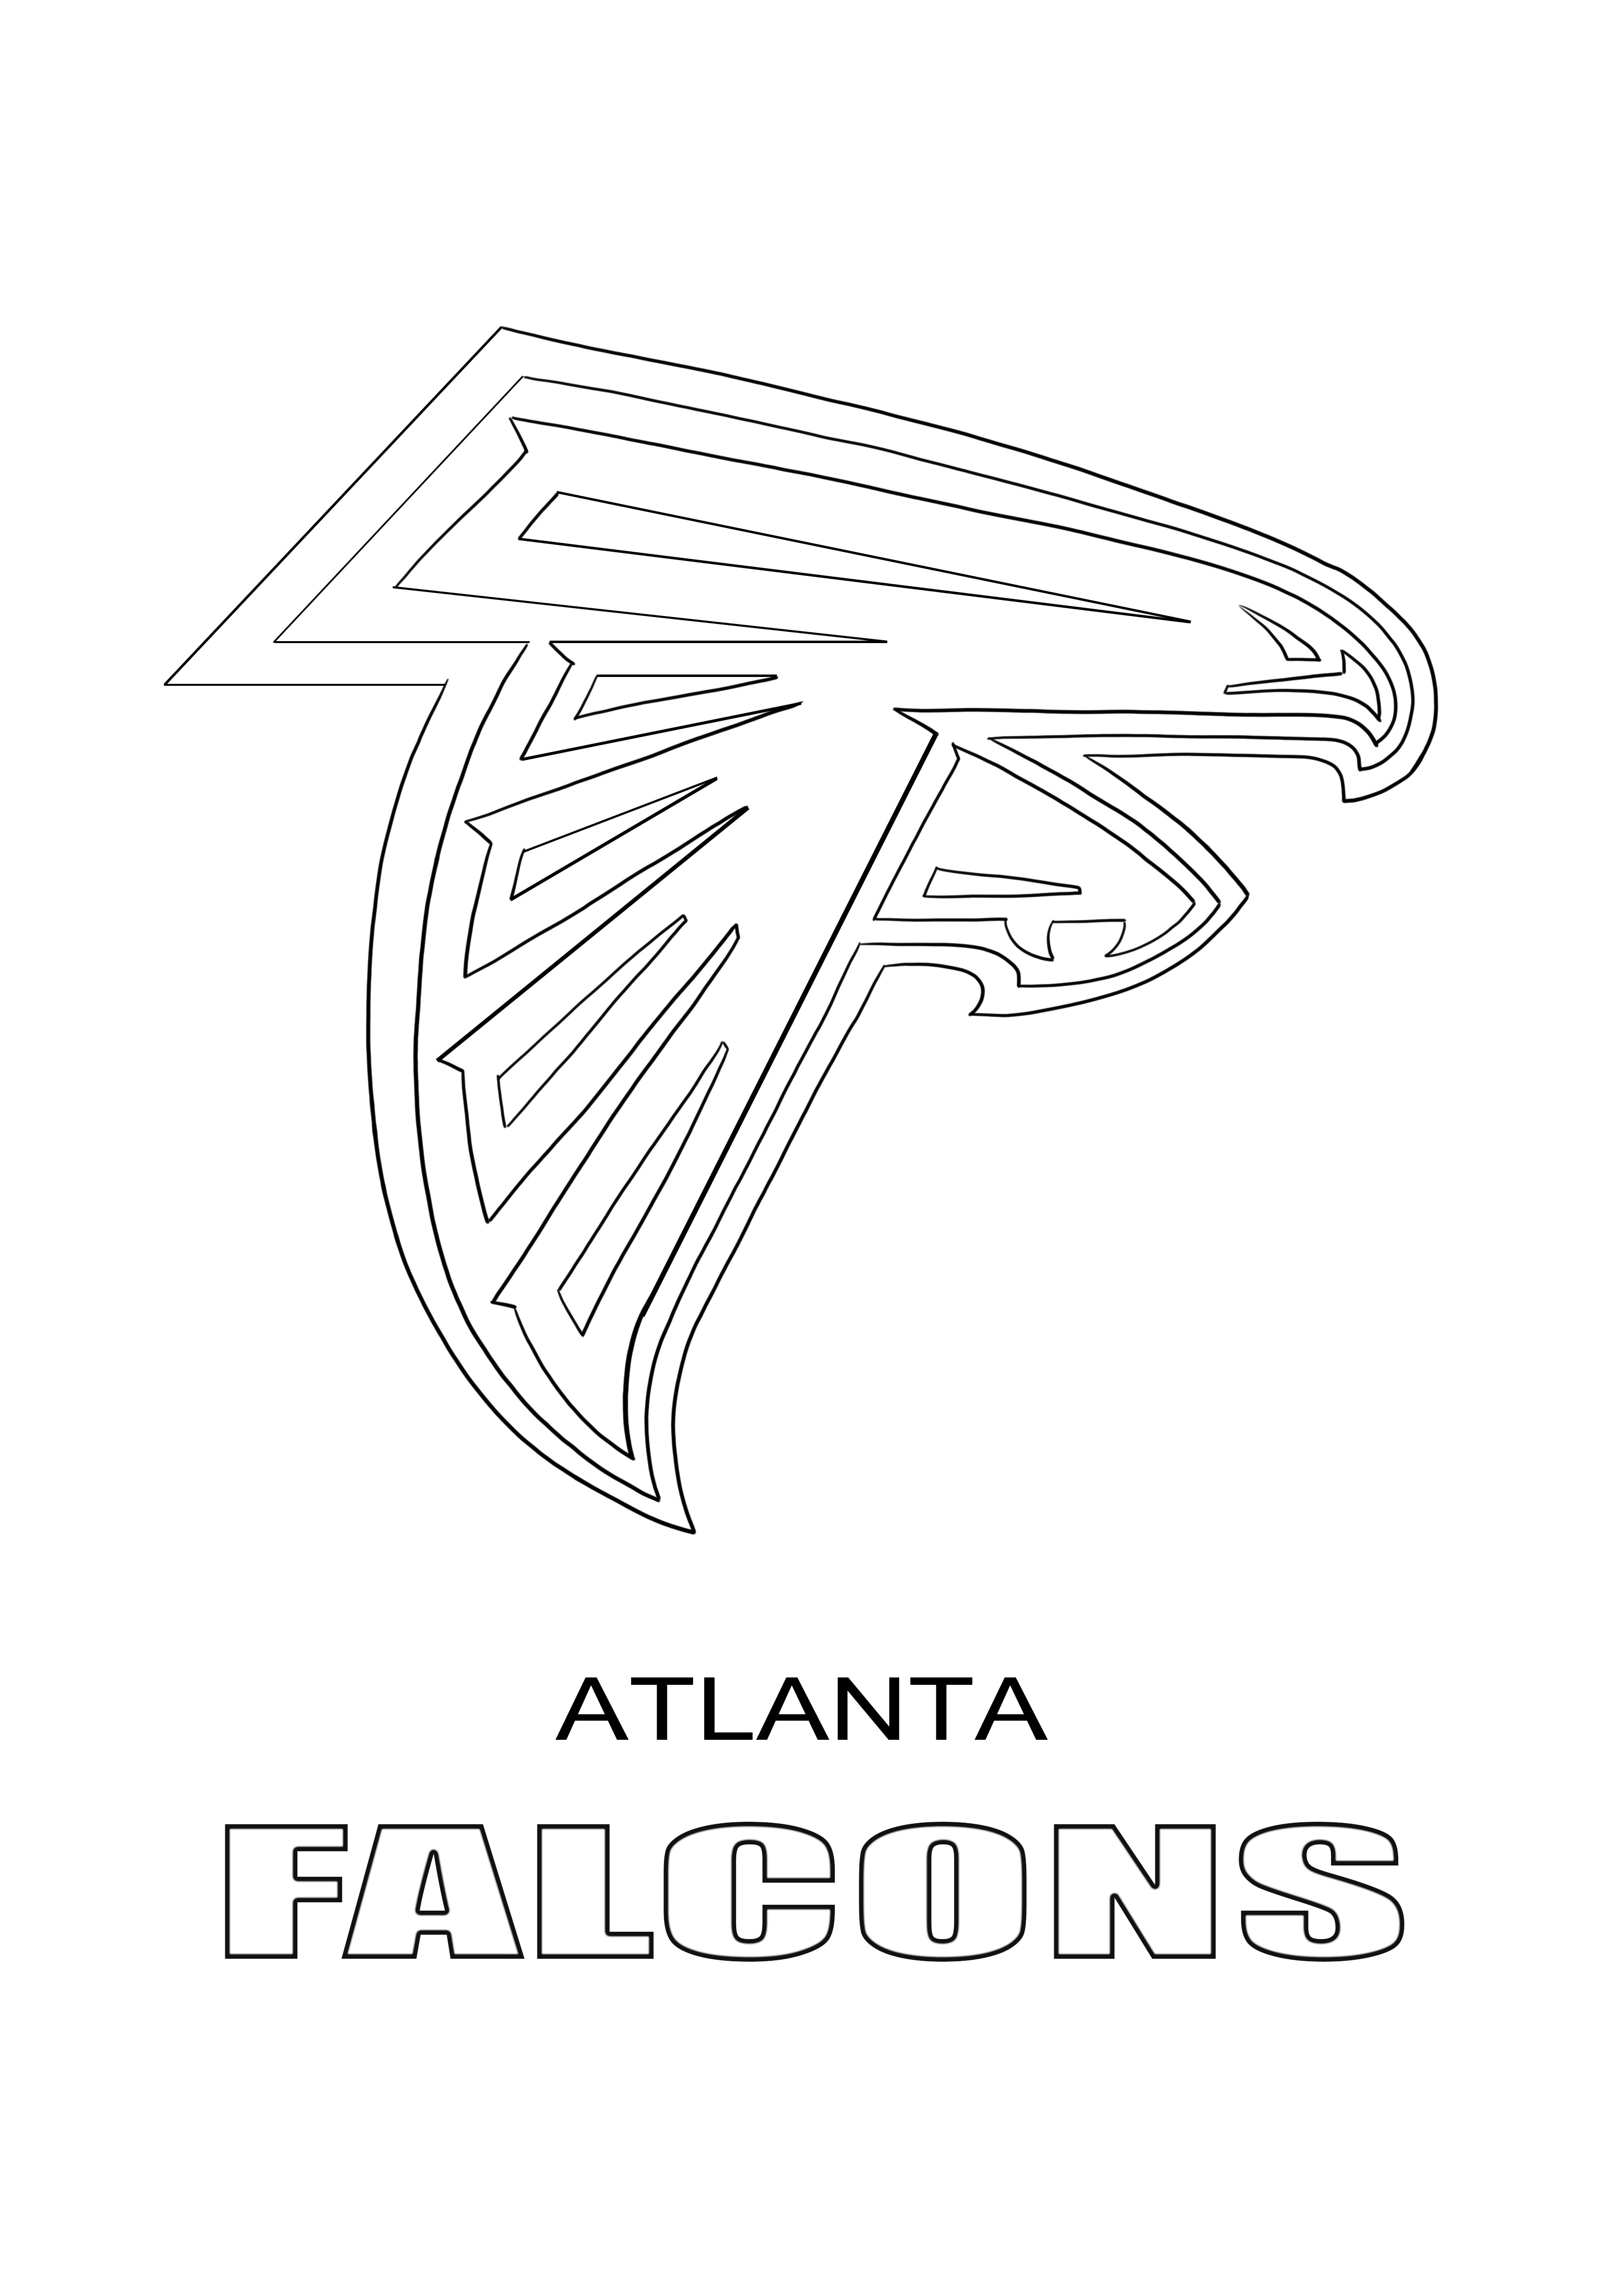 Pewarnaan logo Atlanta Falcons dan unduhan gratis